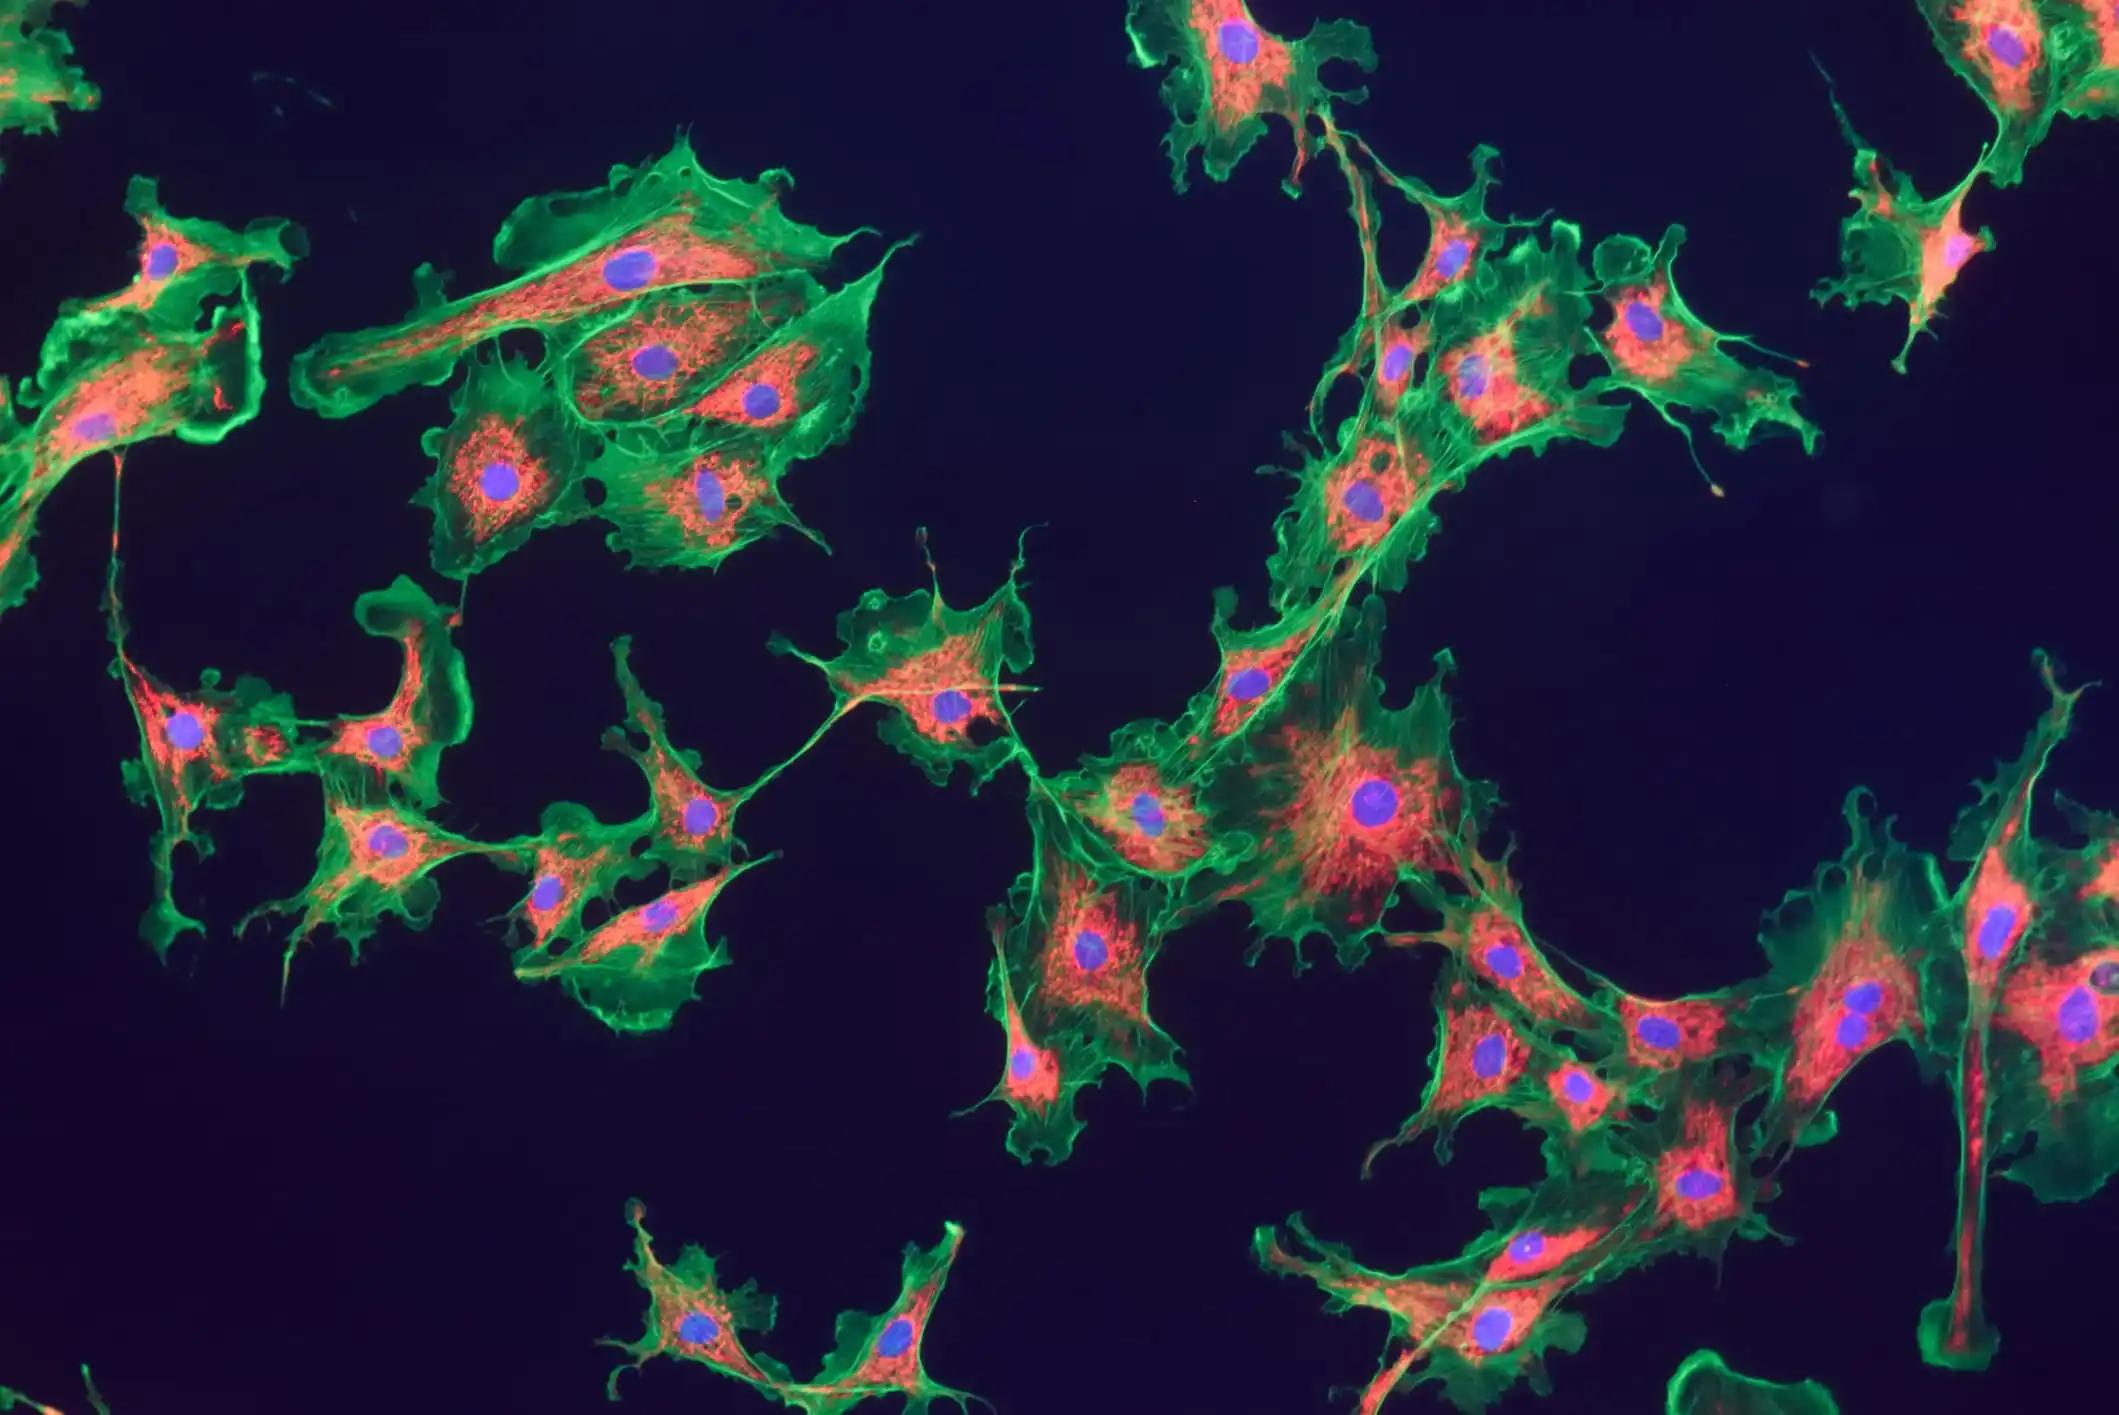 Mitochondria and Nuclei in Fibroblast Cells